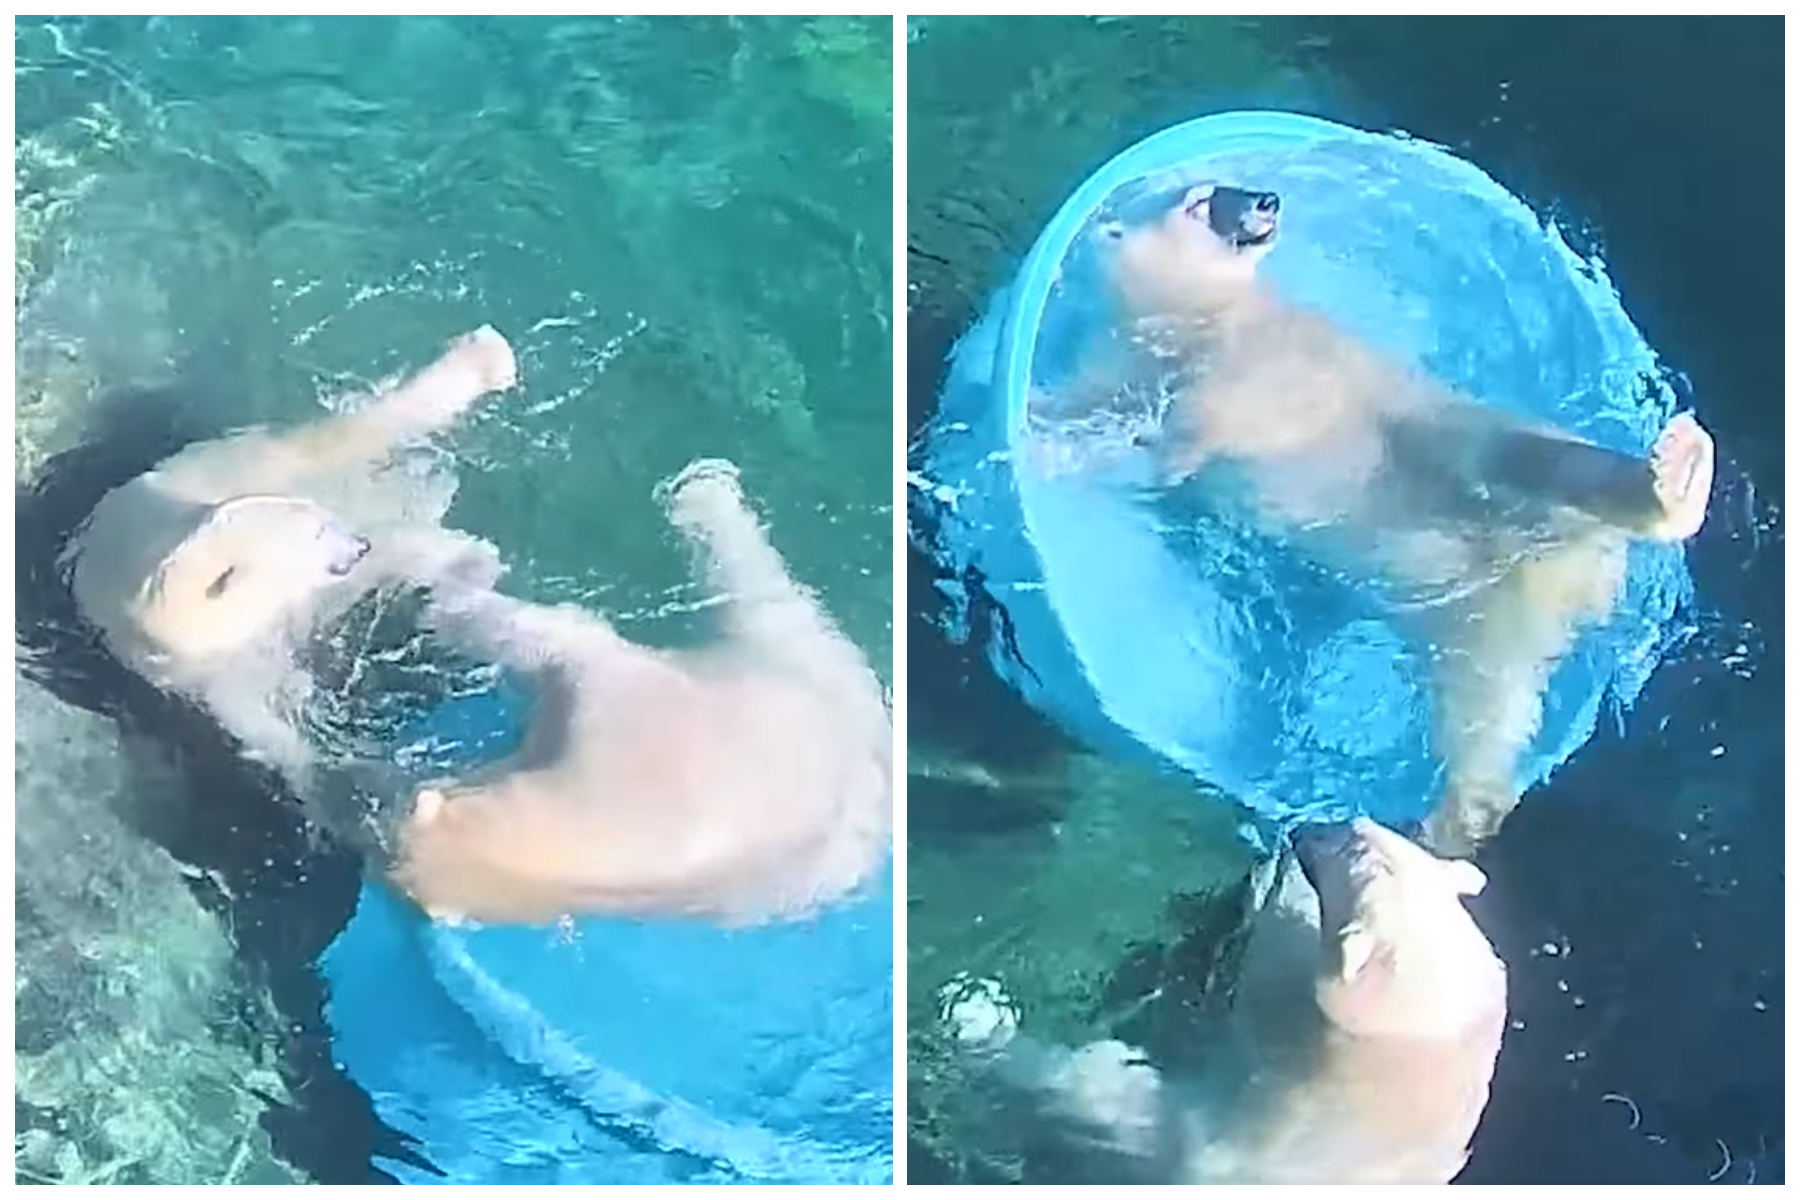 Les ours polaires organisent une fête au bord de la piscine dans une adorable vidéo